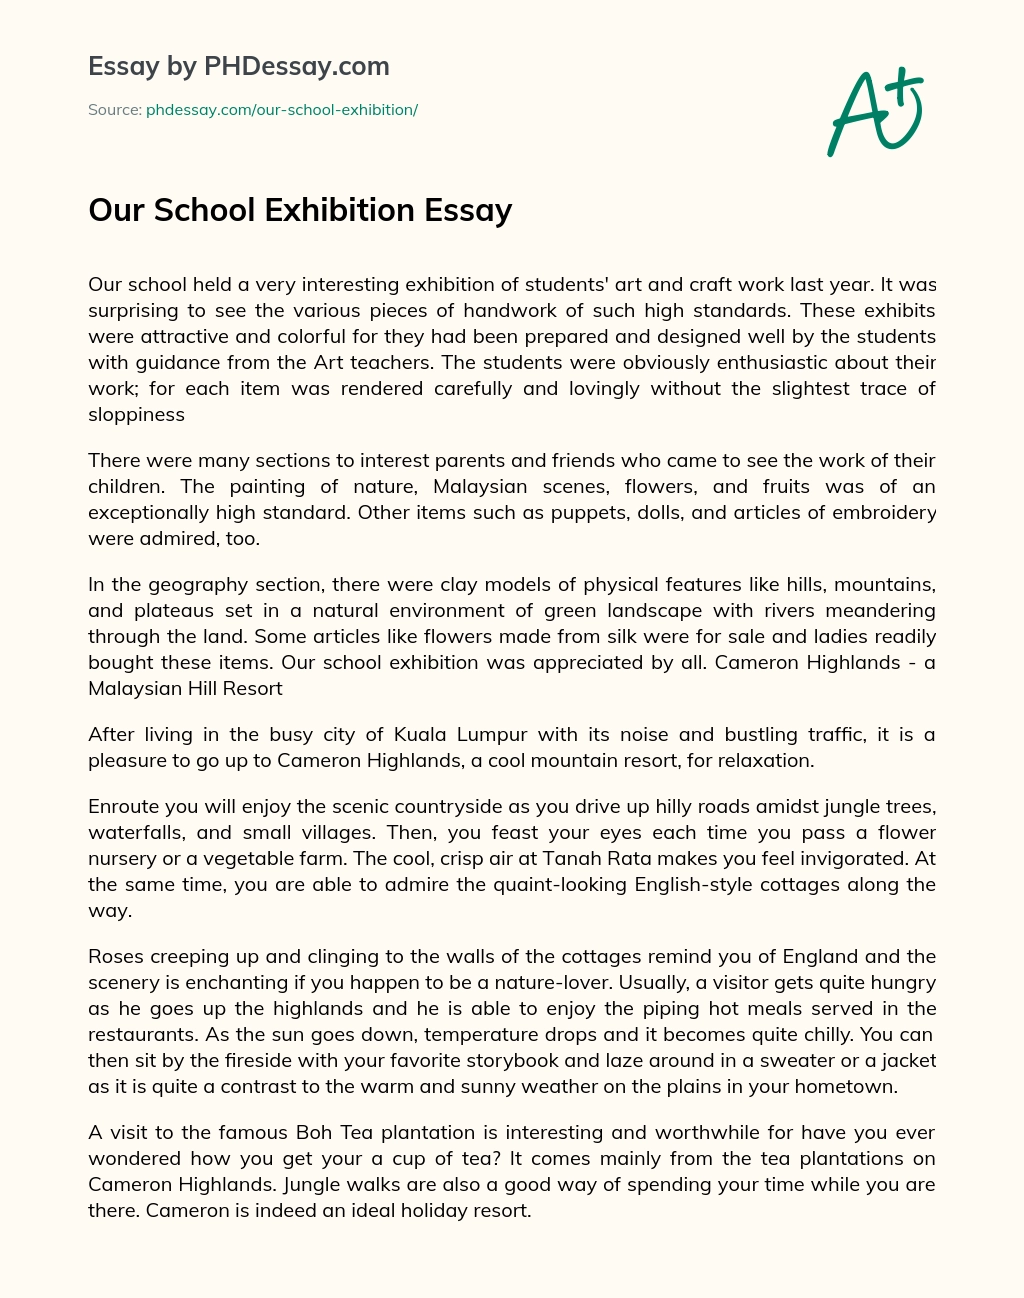 Our School Exhibition Essay essay